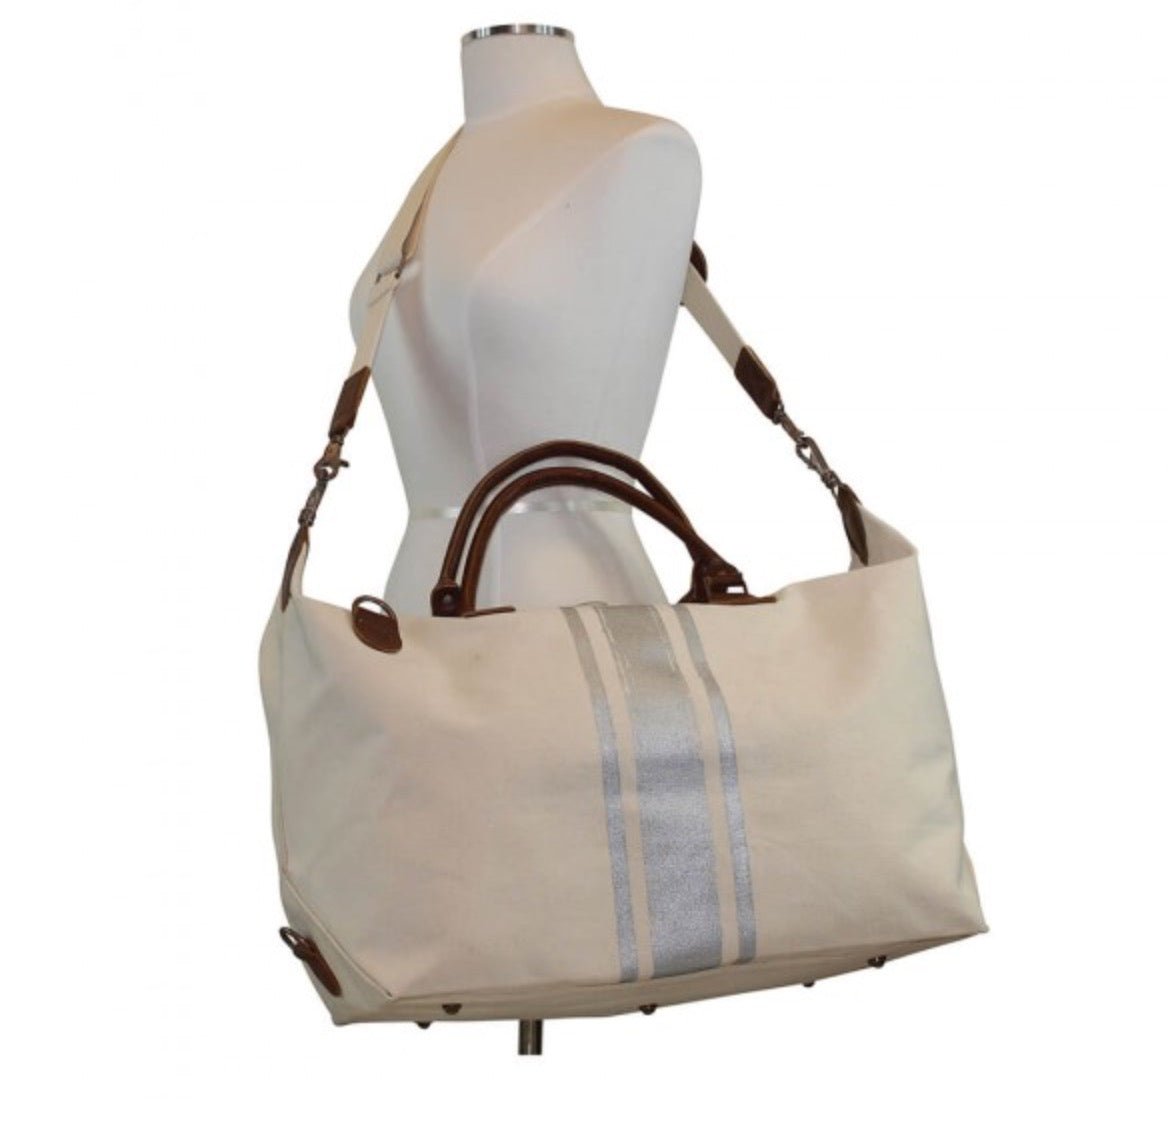 Weekender Striped Bag - Side View - Shoulder Strap on Mannequin & Handles